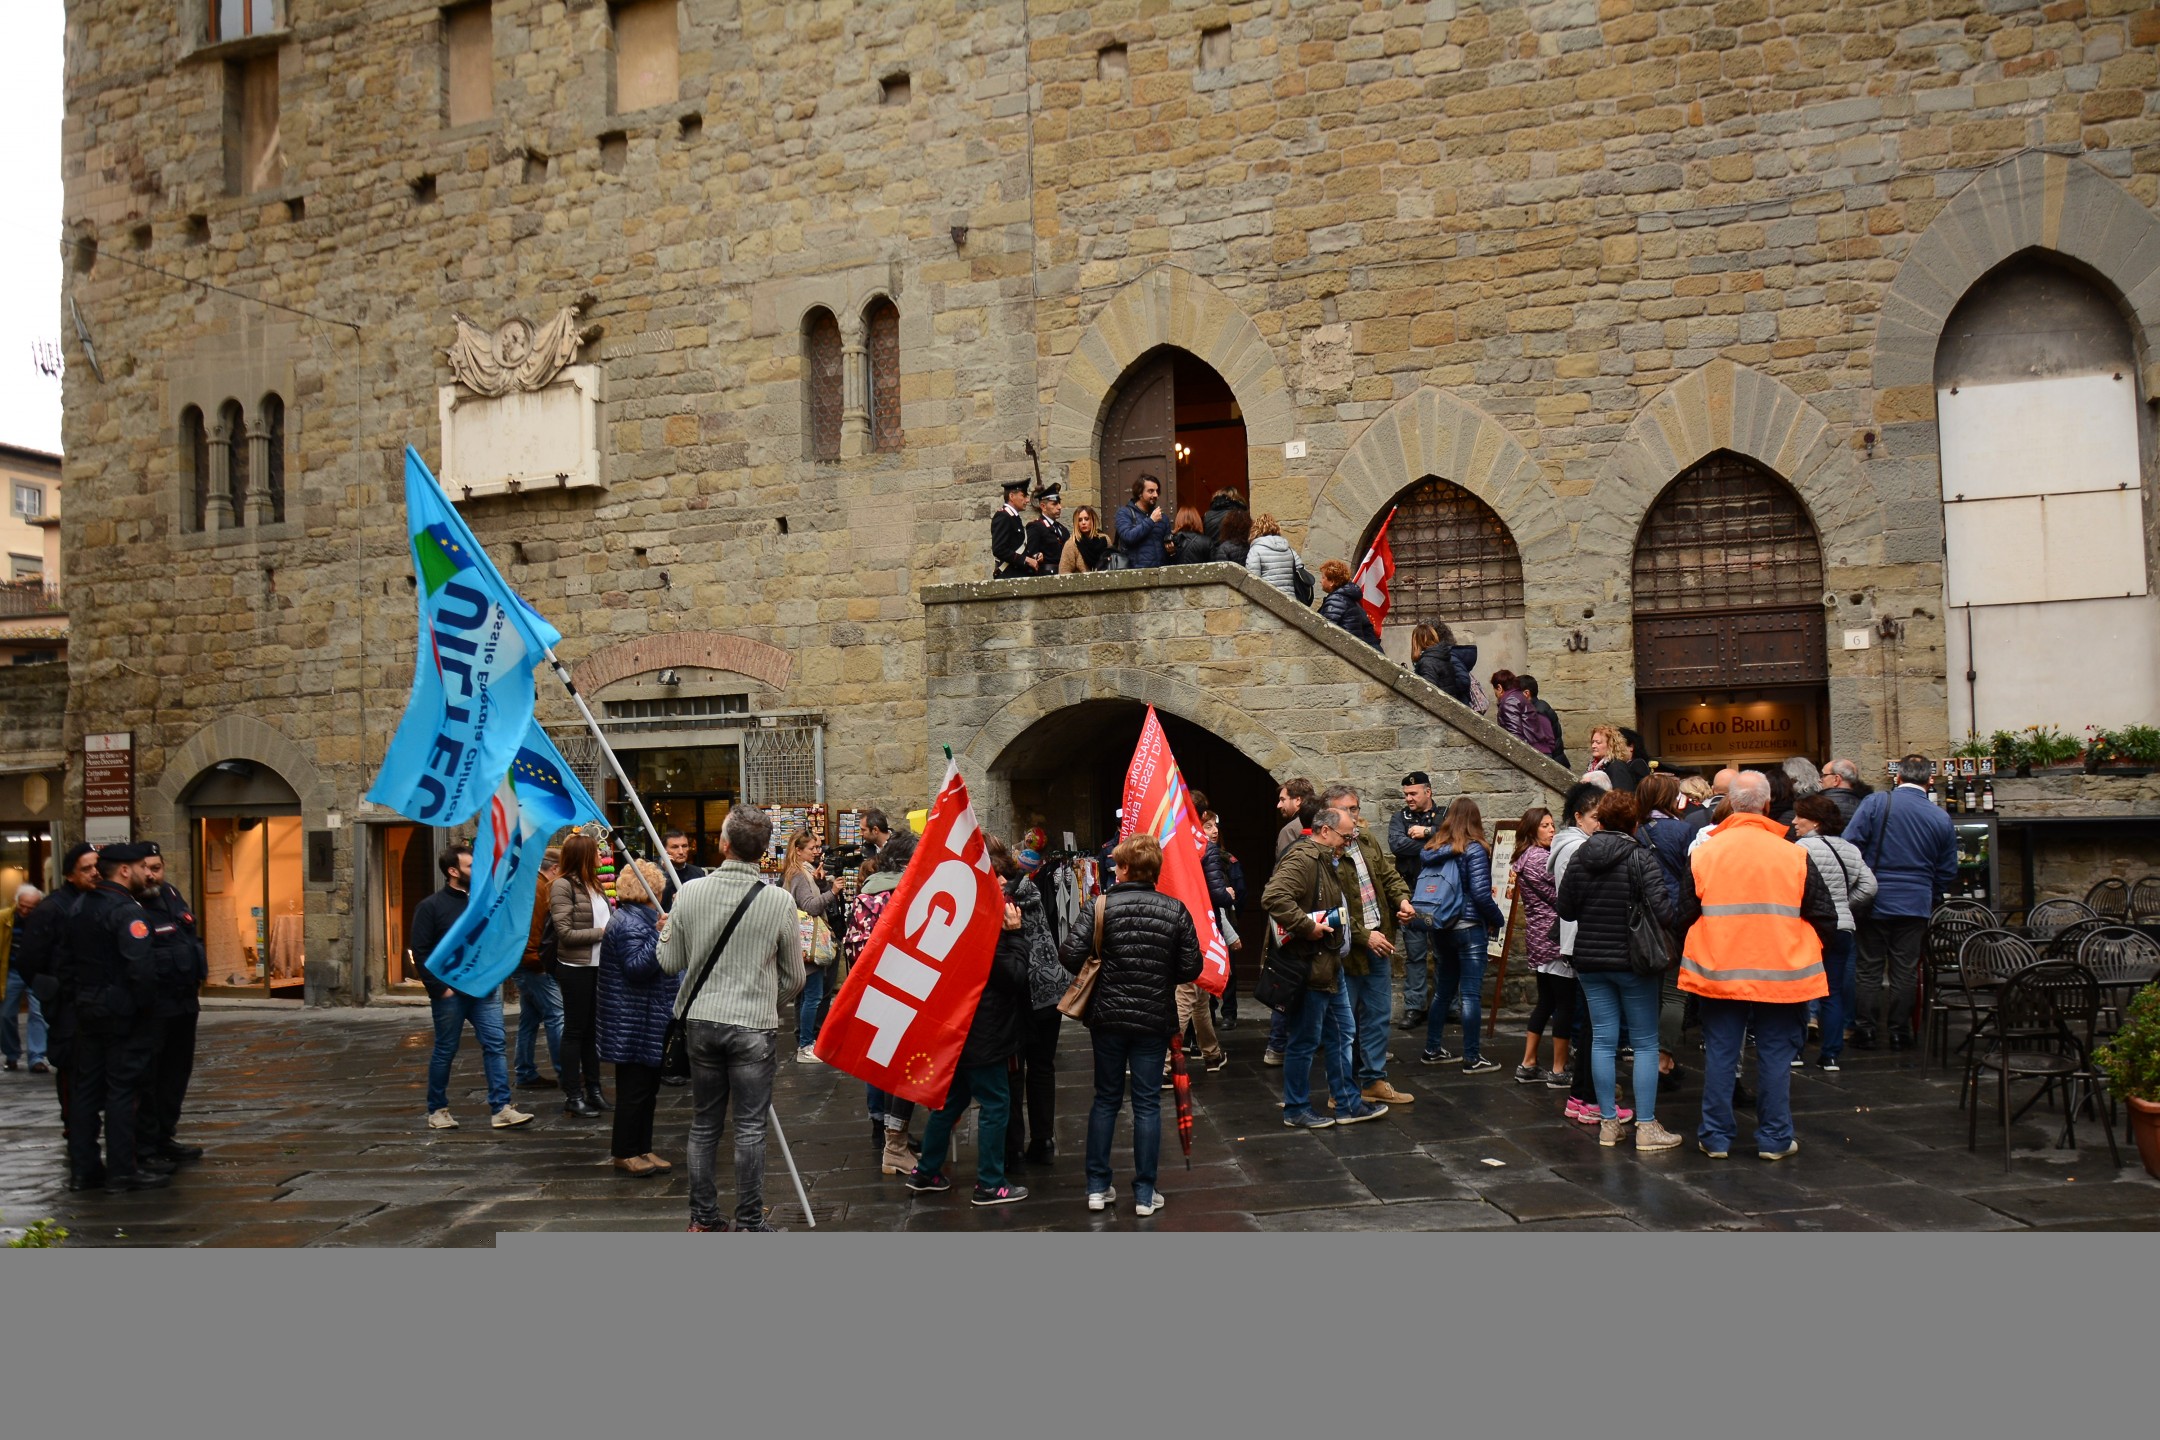 Lavoratrici della Cantarelli in piazza a Cortona per chiedere risposte sul loro futuro